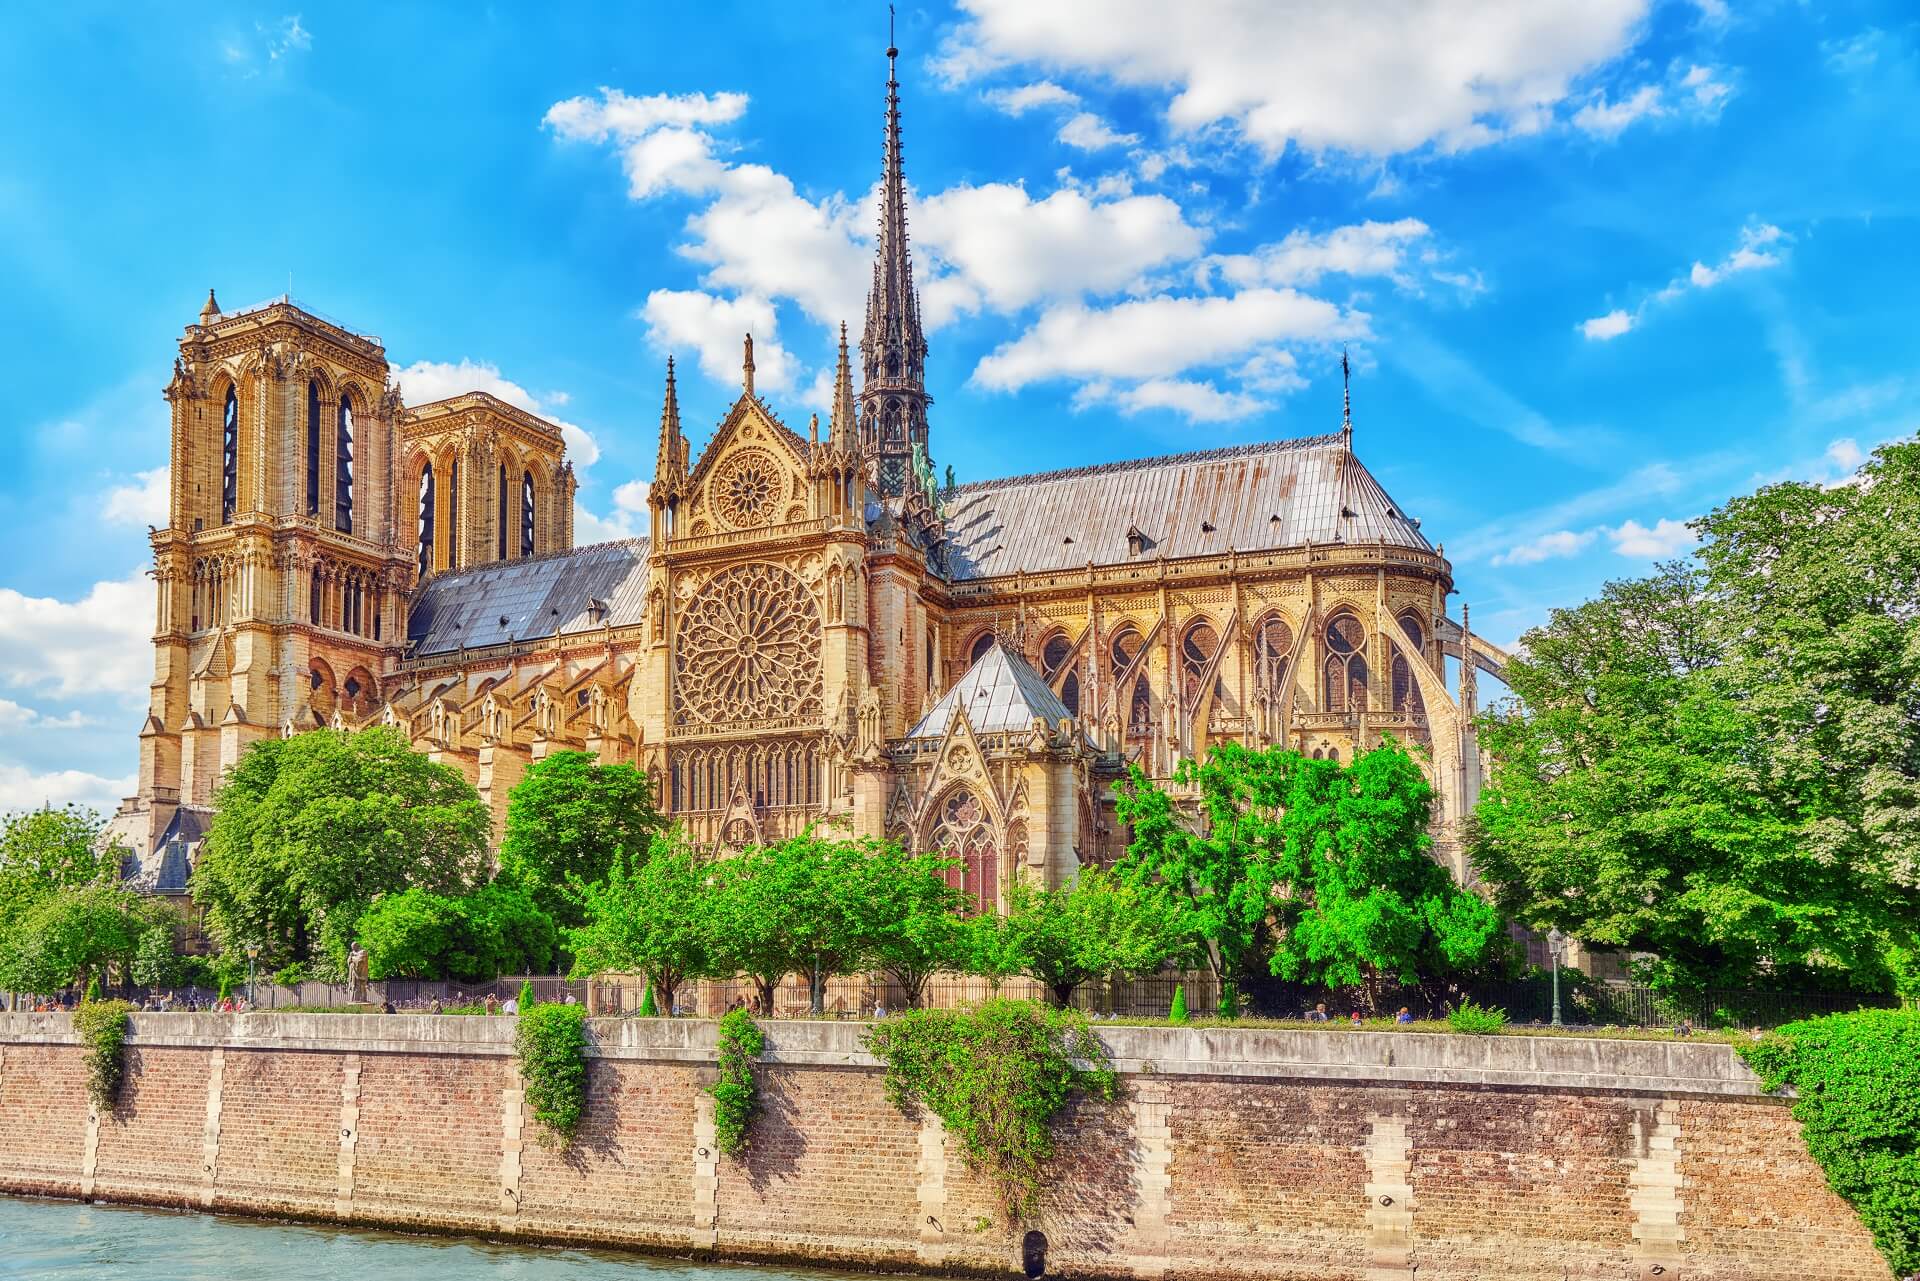 Qui a volé l’argent destiné à la restauration de Notre-Dame de Paris ?